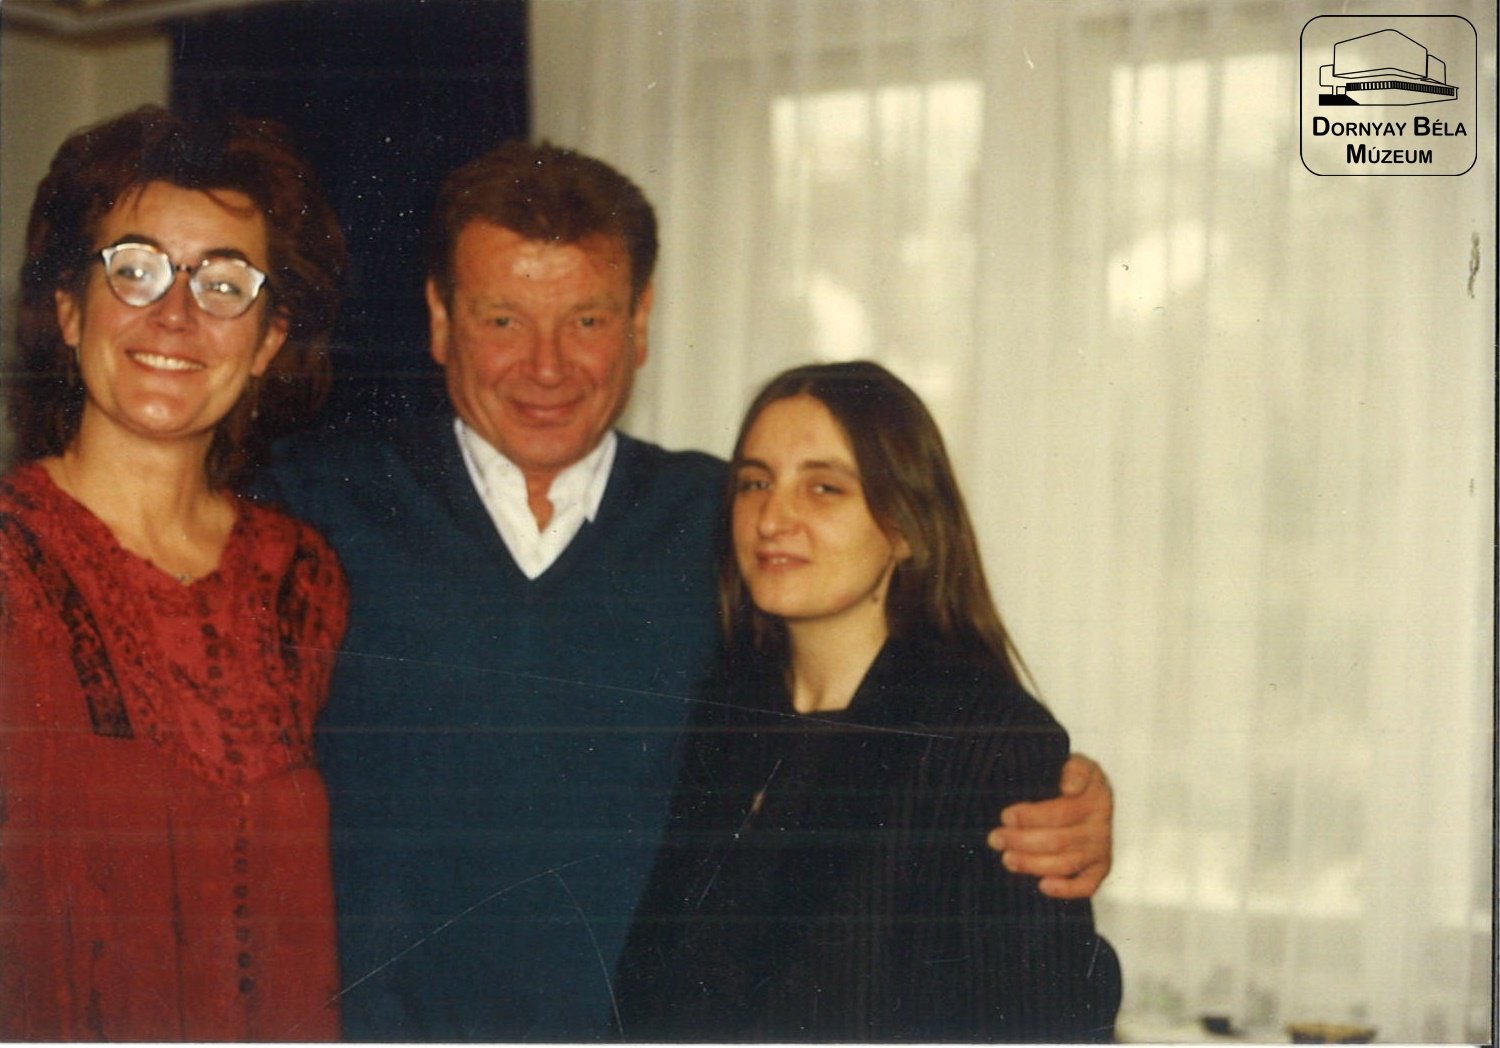 Gaál István, Németh Beatrix és Medgyesi Gabriella társaságában (Dornyay Béla Múzeum, Salgótarján CC BY-NC-SA)